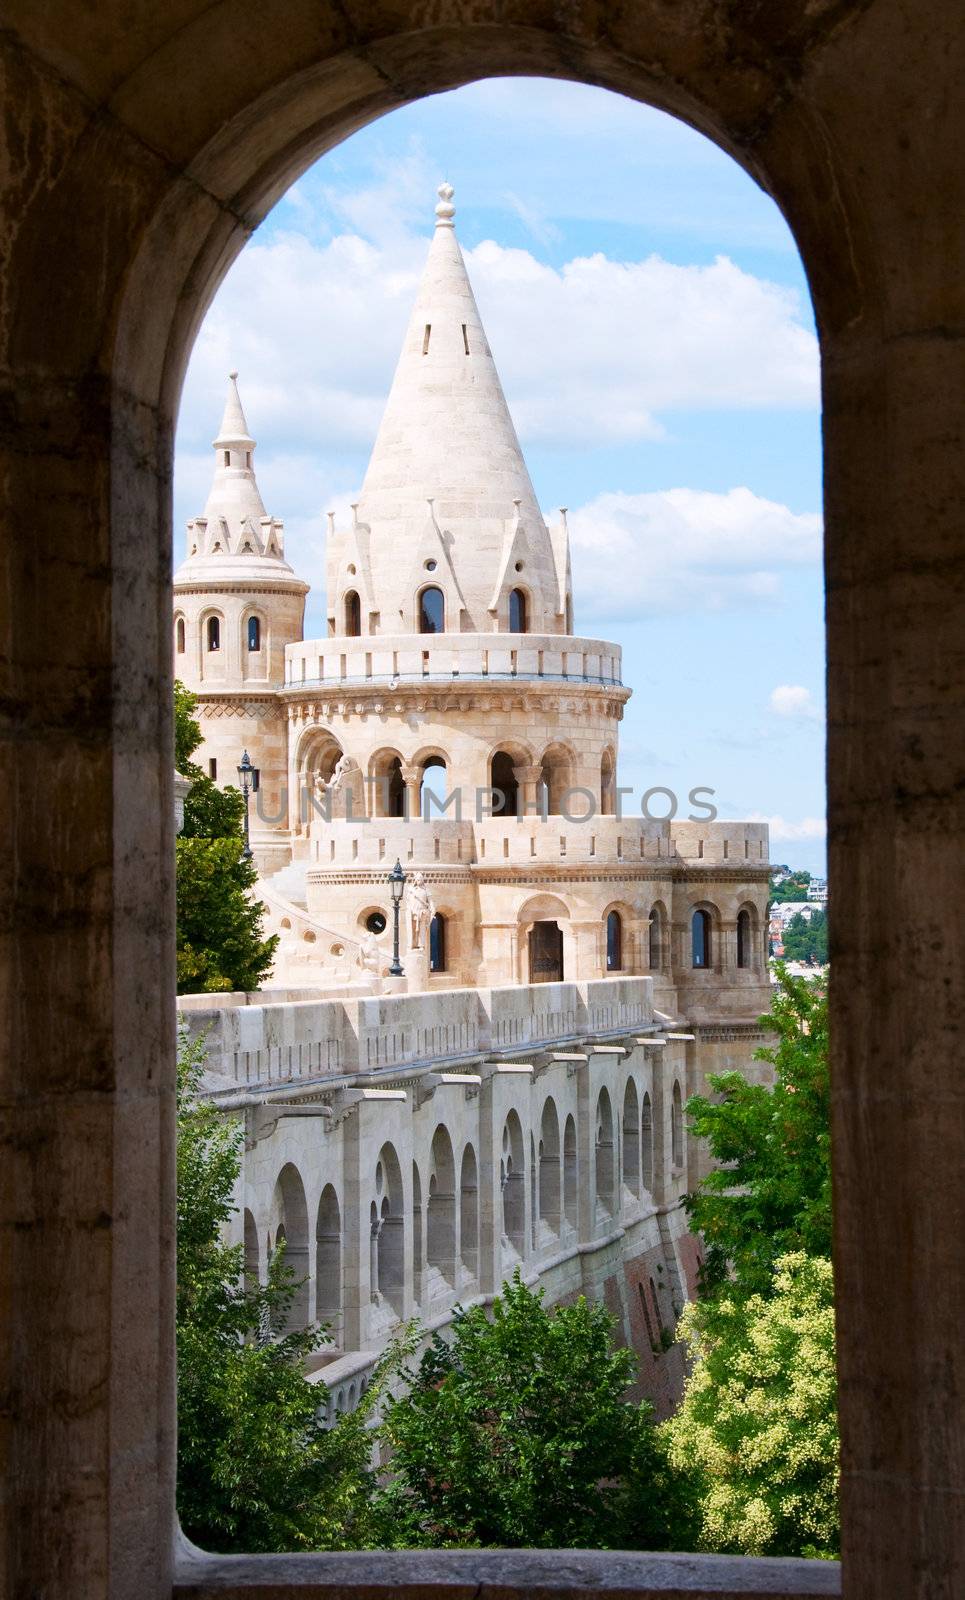 Budapest castle towers through round-headed window by iryna_rasko